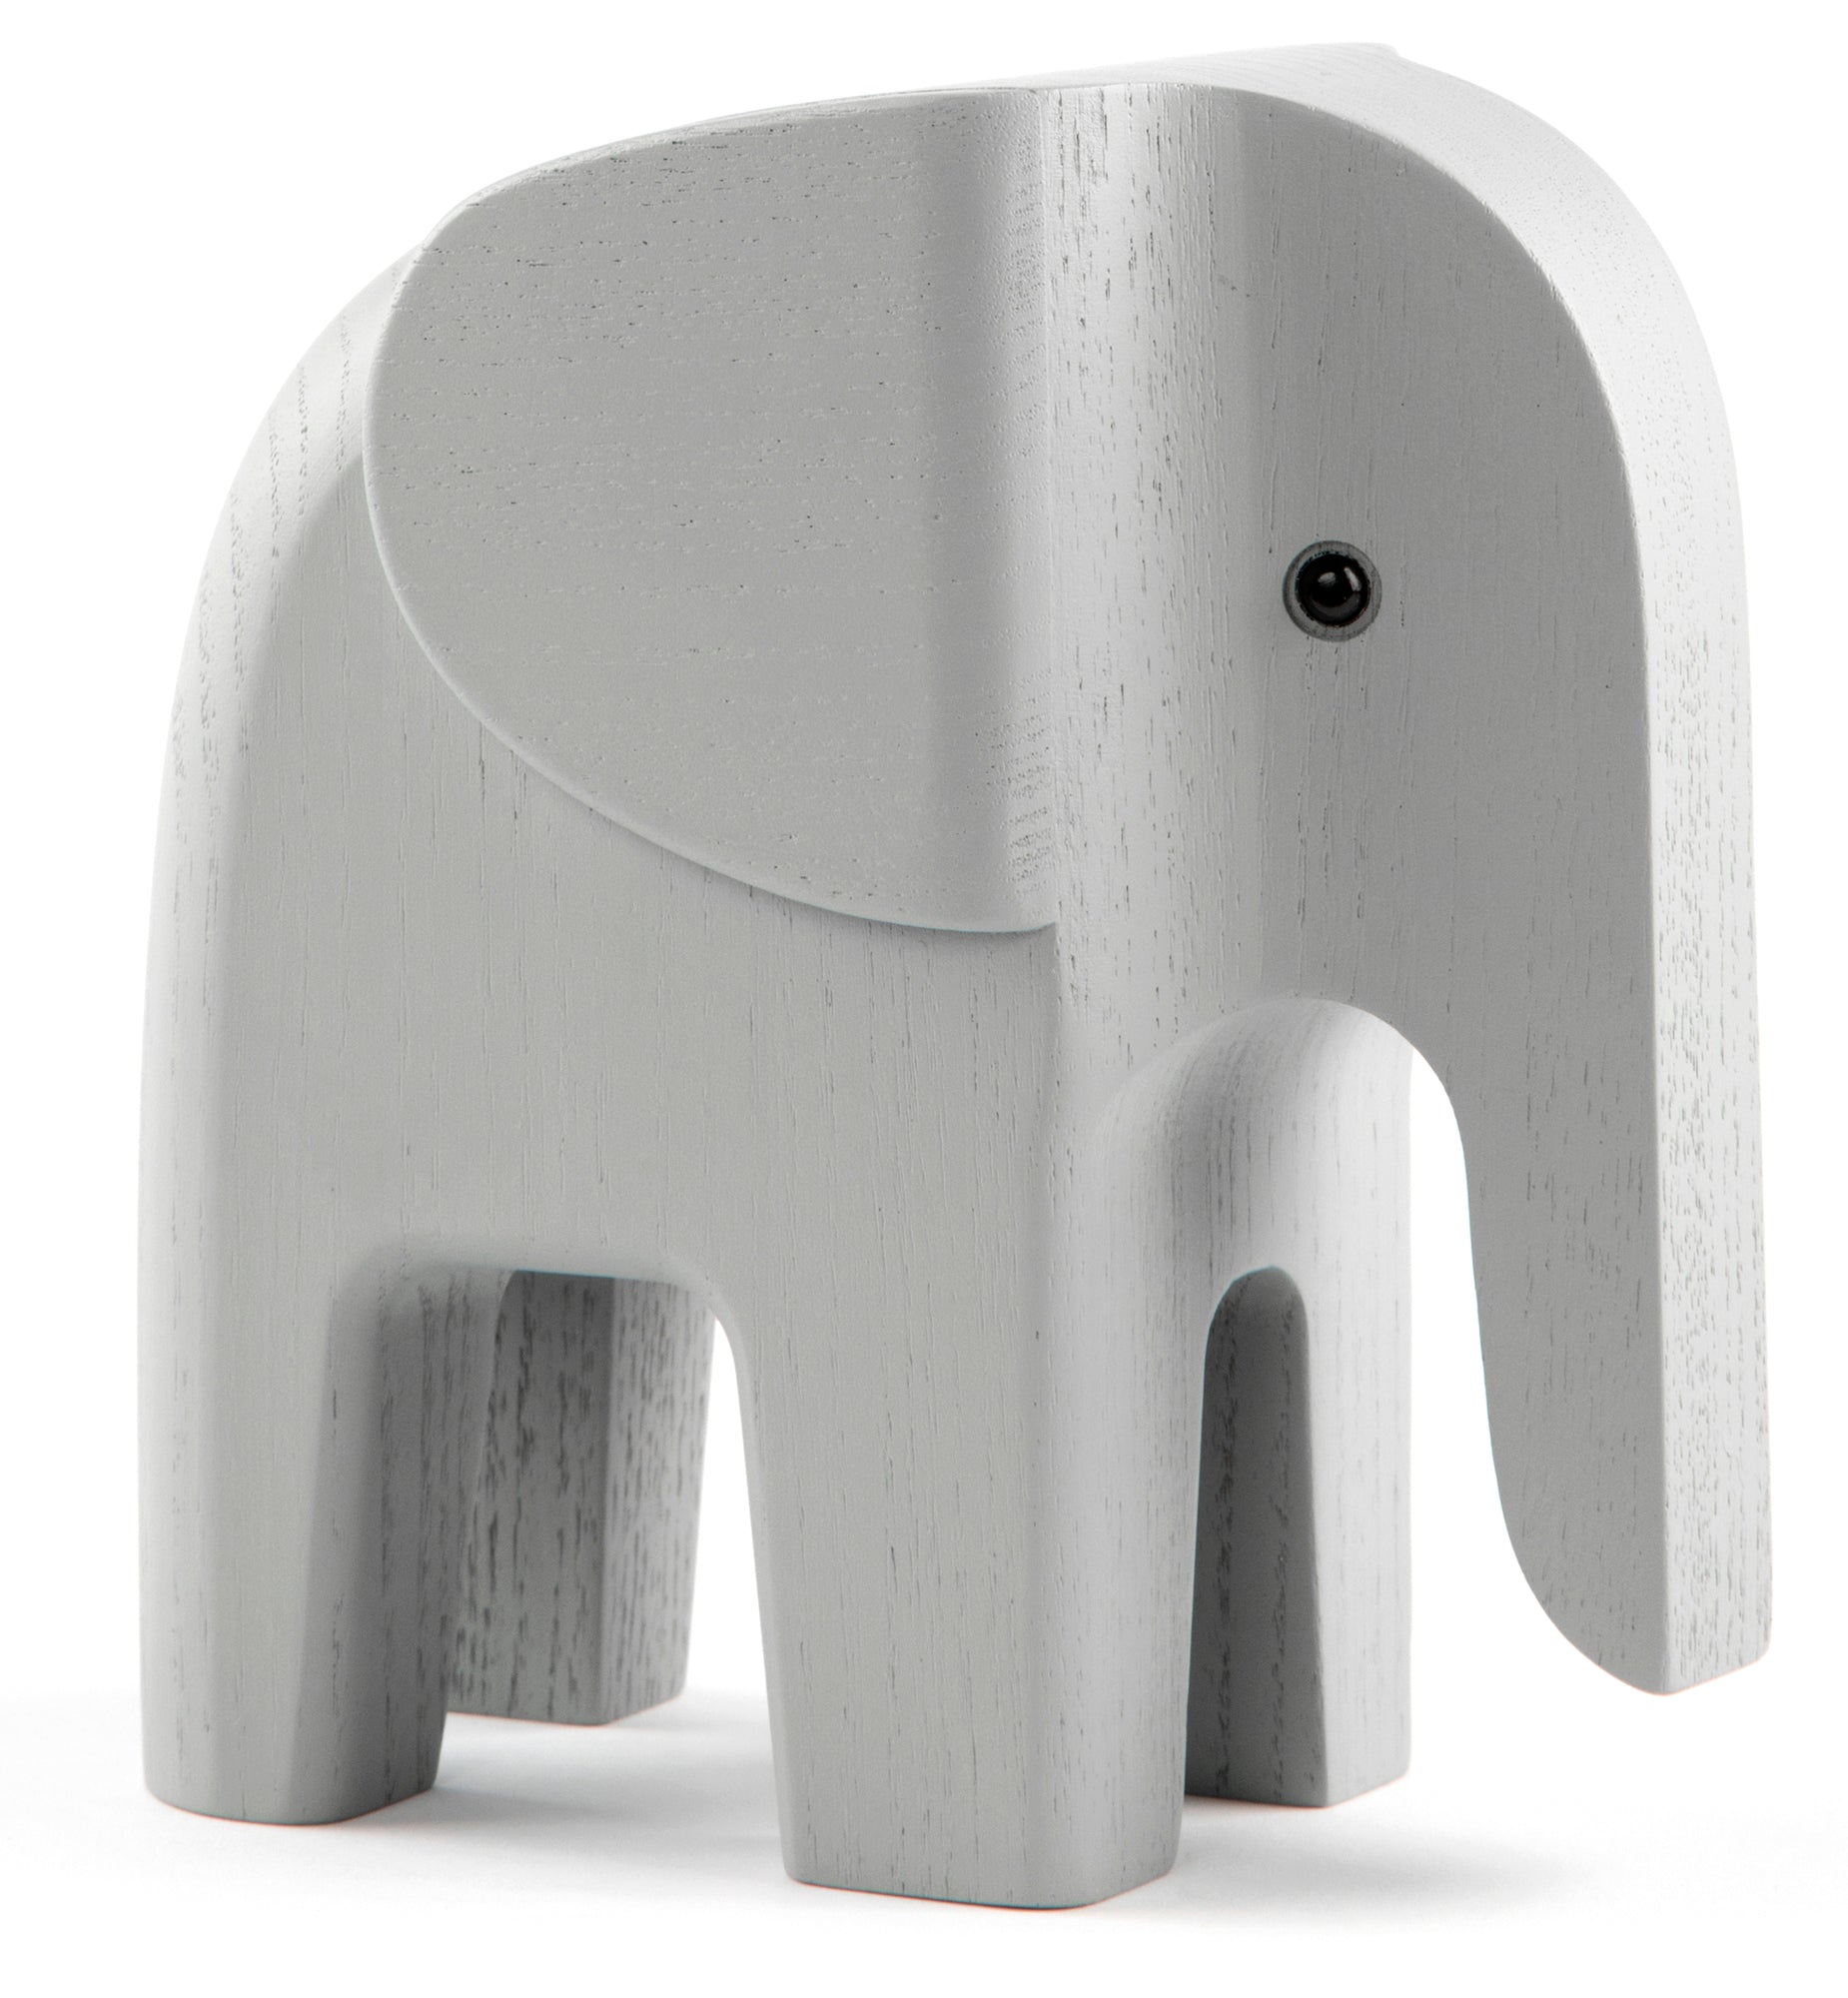 ELEPHANT limited WWF edition - grey ash wood